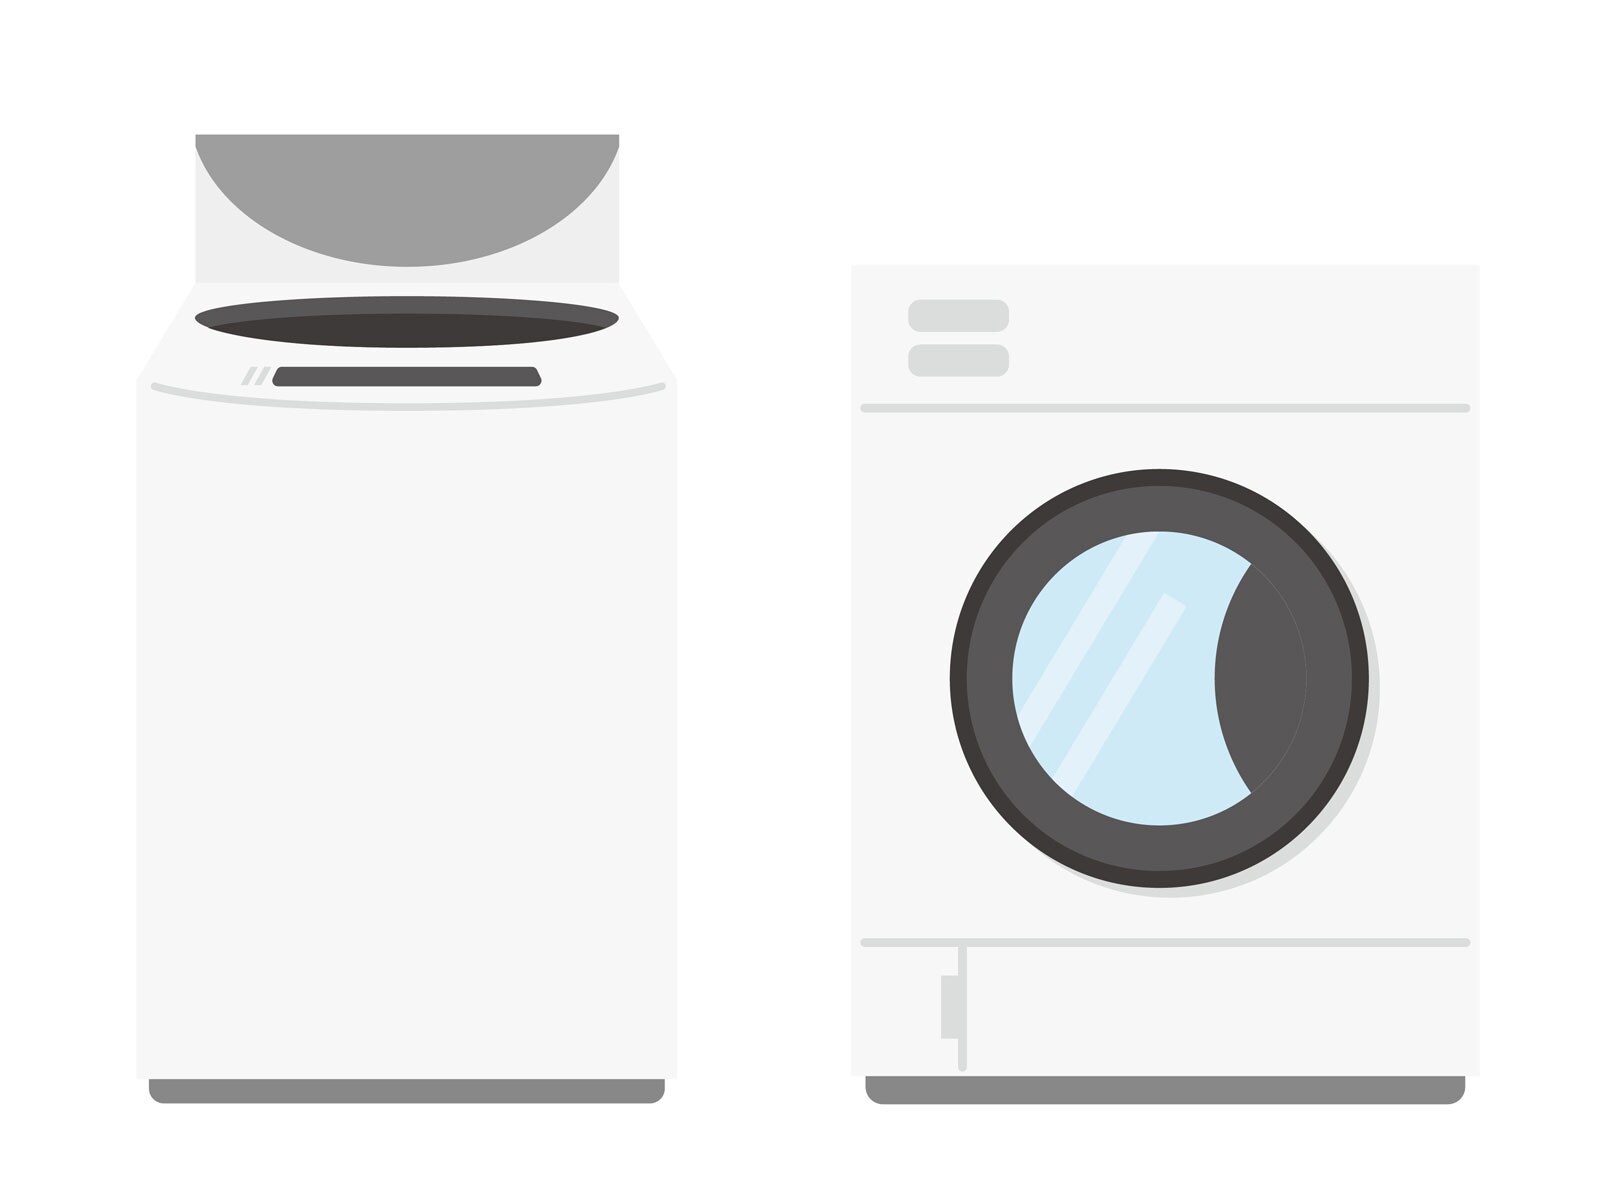 「洗濯機」を使っていないとき、フタは開けっ放しと閉めておくのはどっちがいい？ 【家電のプロが解説】